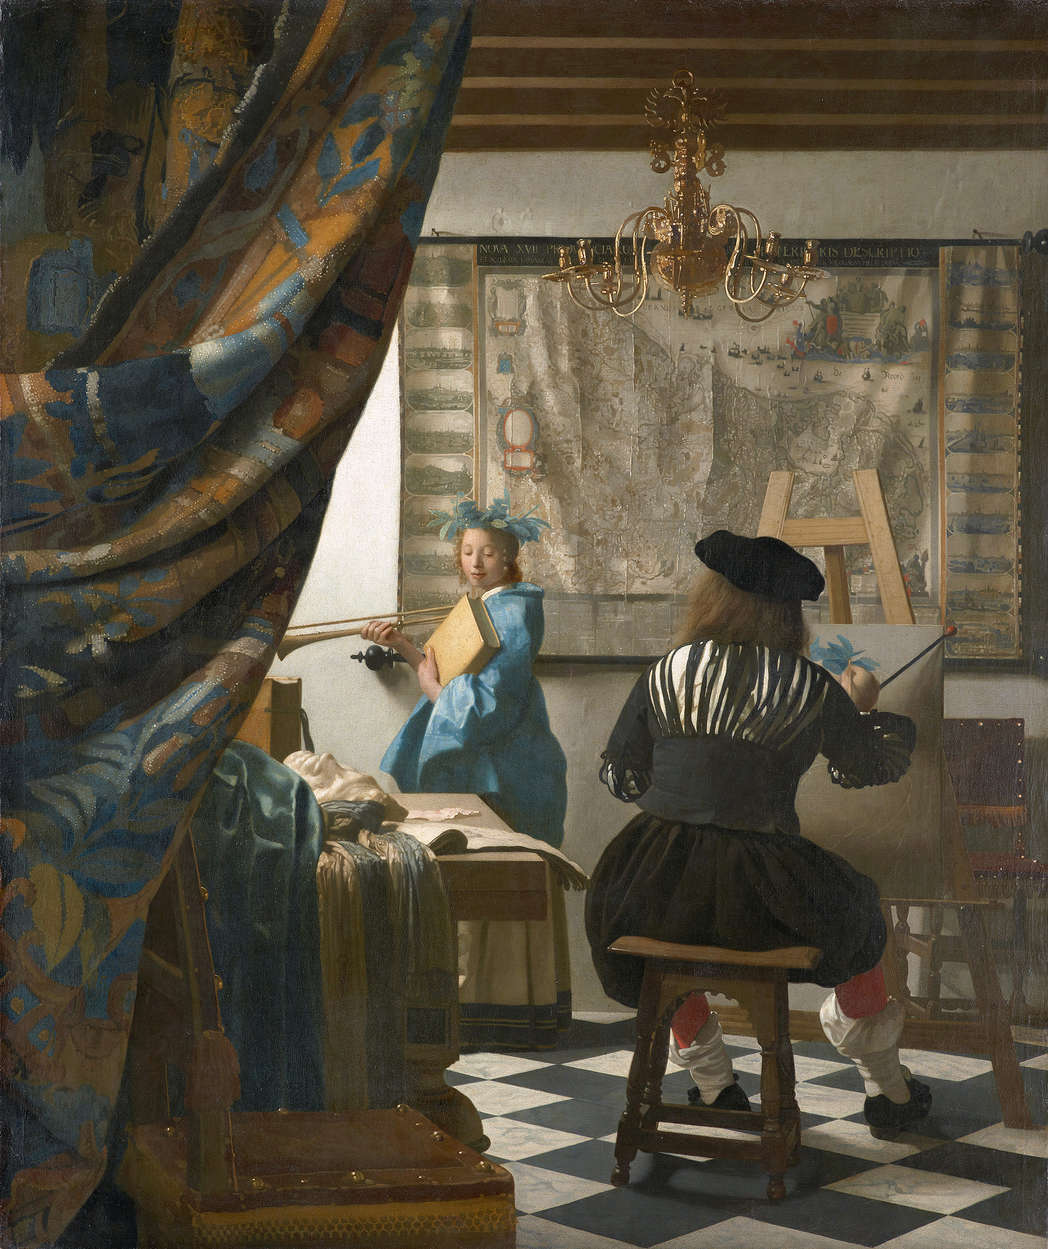             Muurschildering "Vermeer in zijn atelier" van Jan Vermeer
        